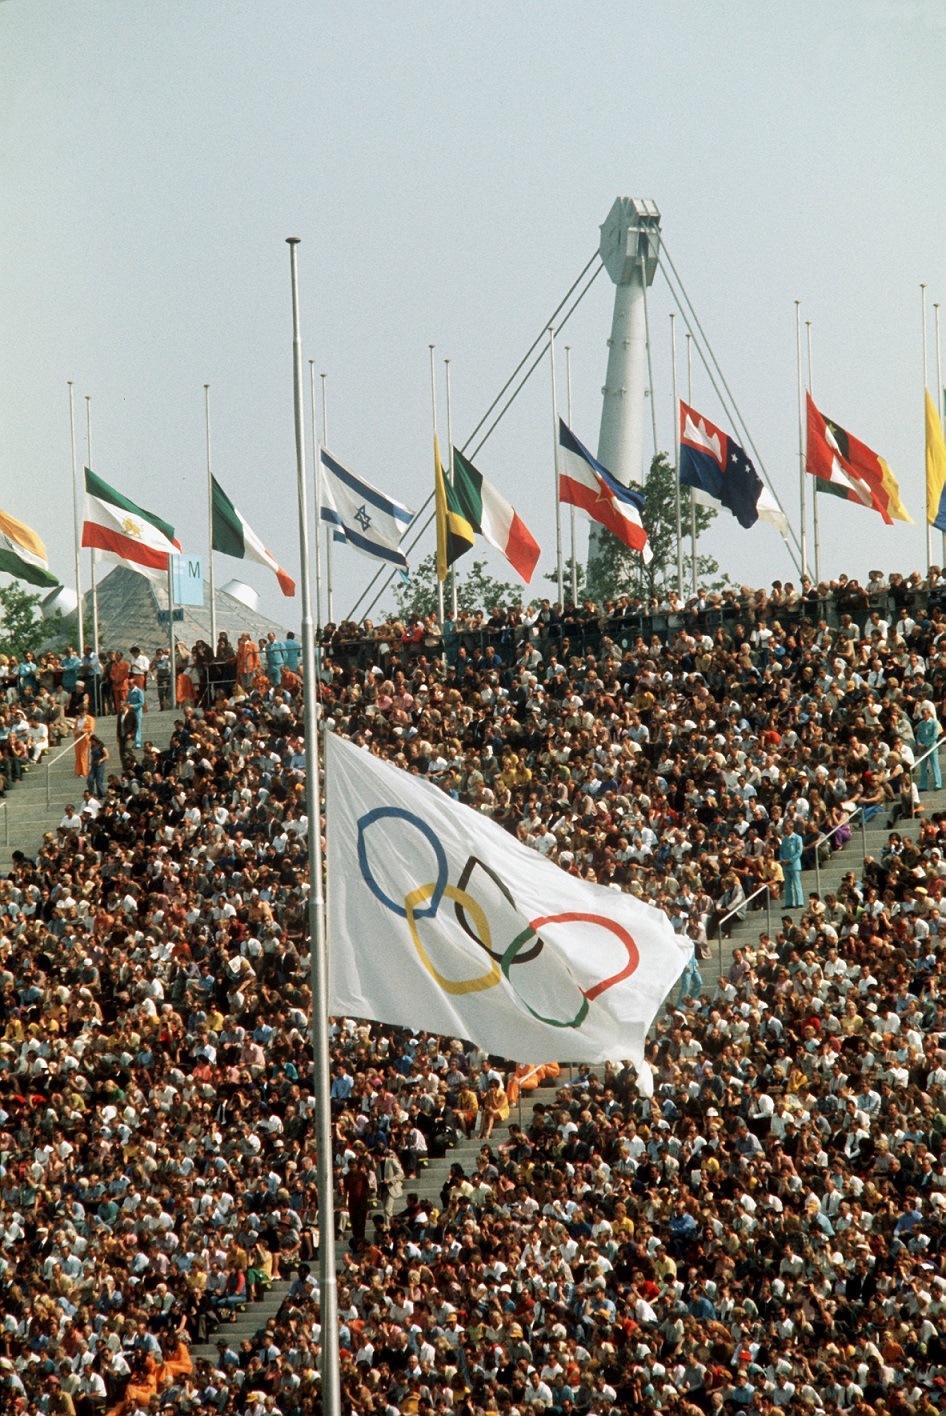 Gedenkveranstaltung am Vormittag des 06.09.1972 mit der Olympia-Flagge auf Halbmast